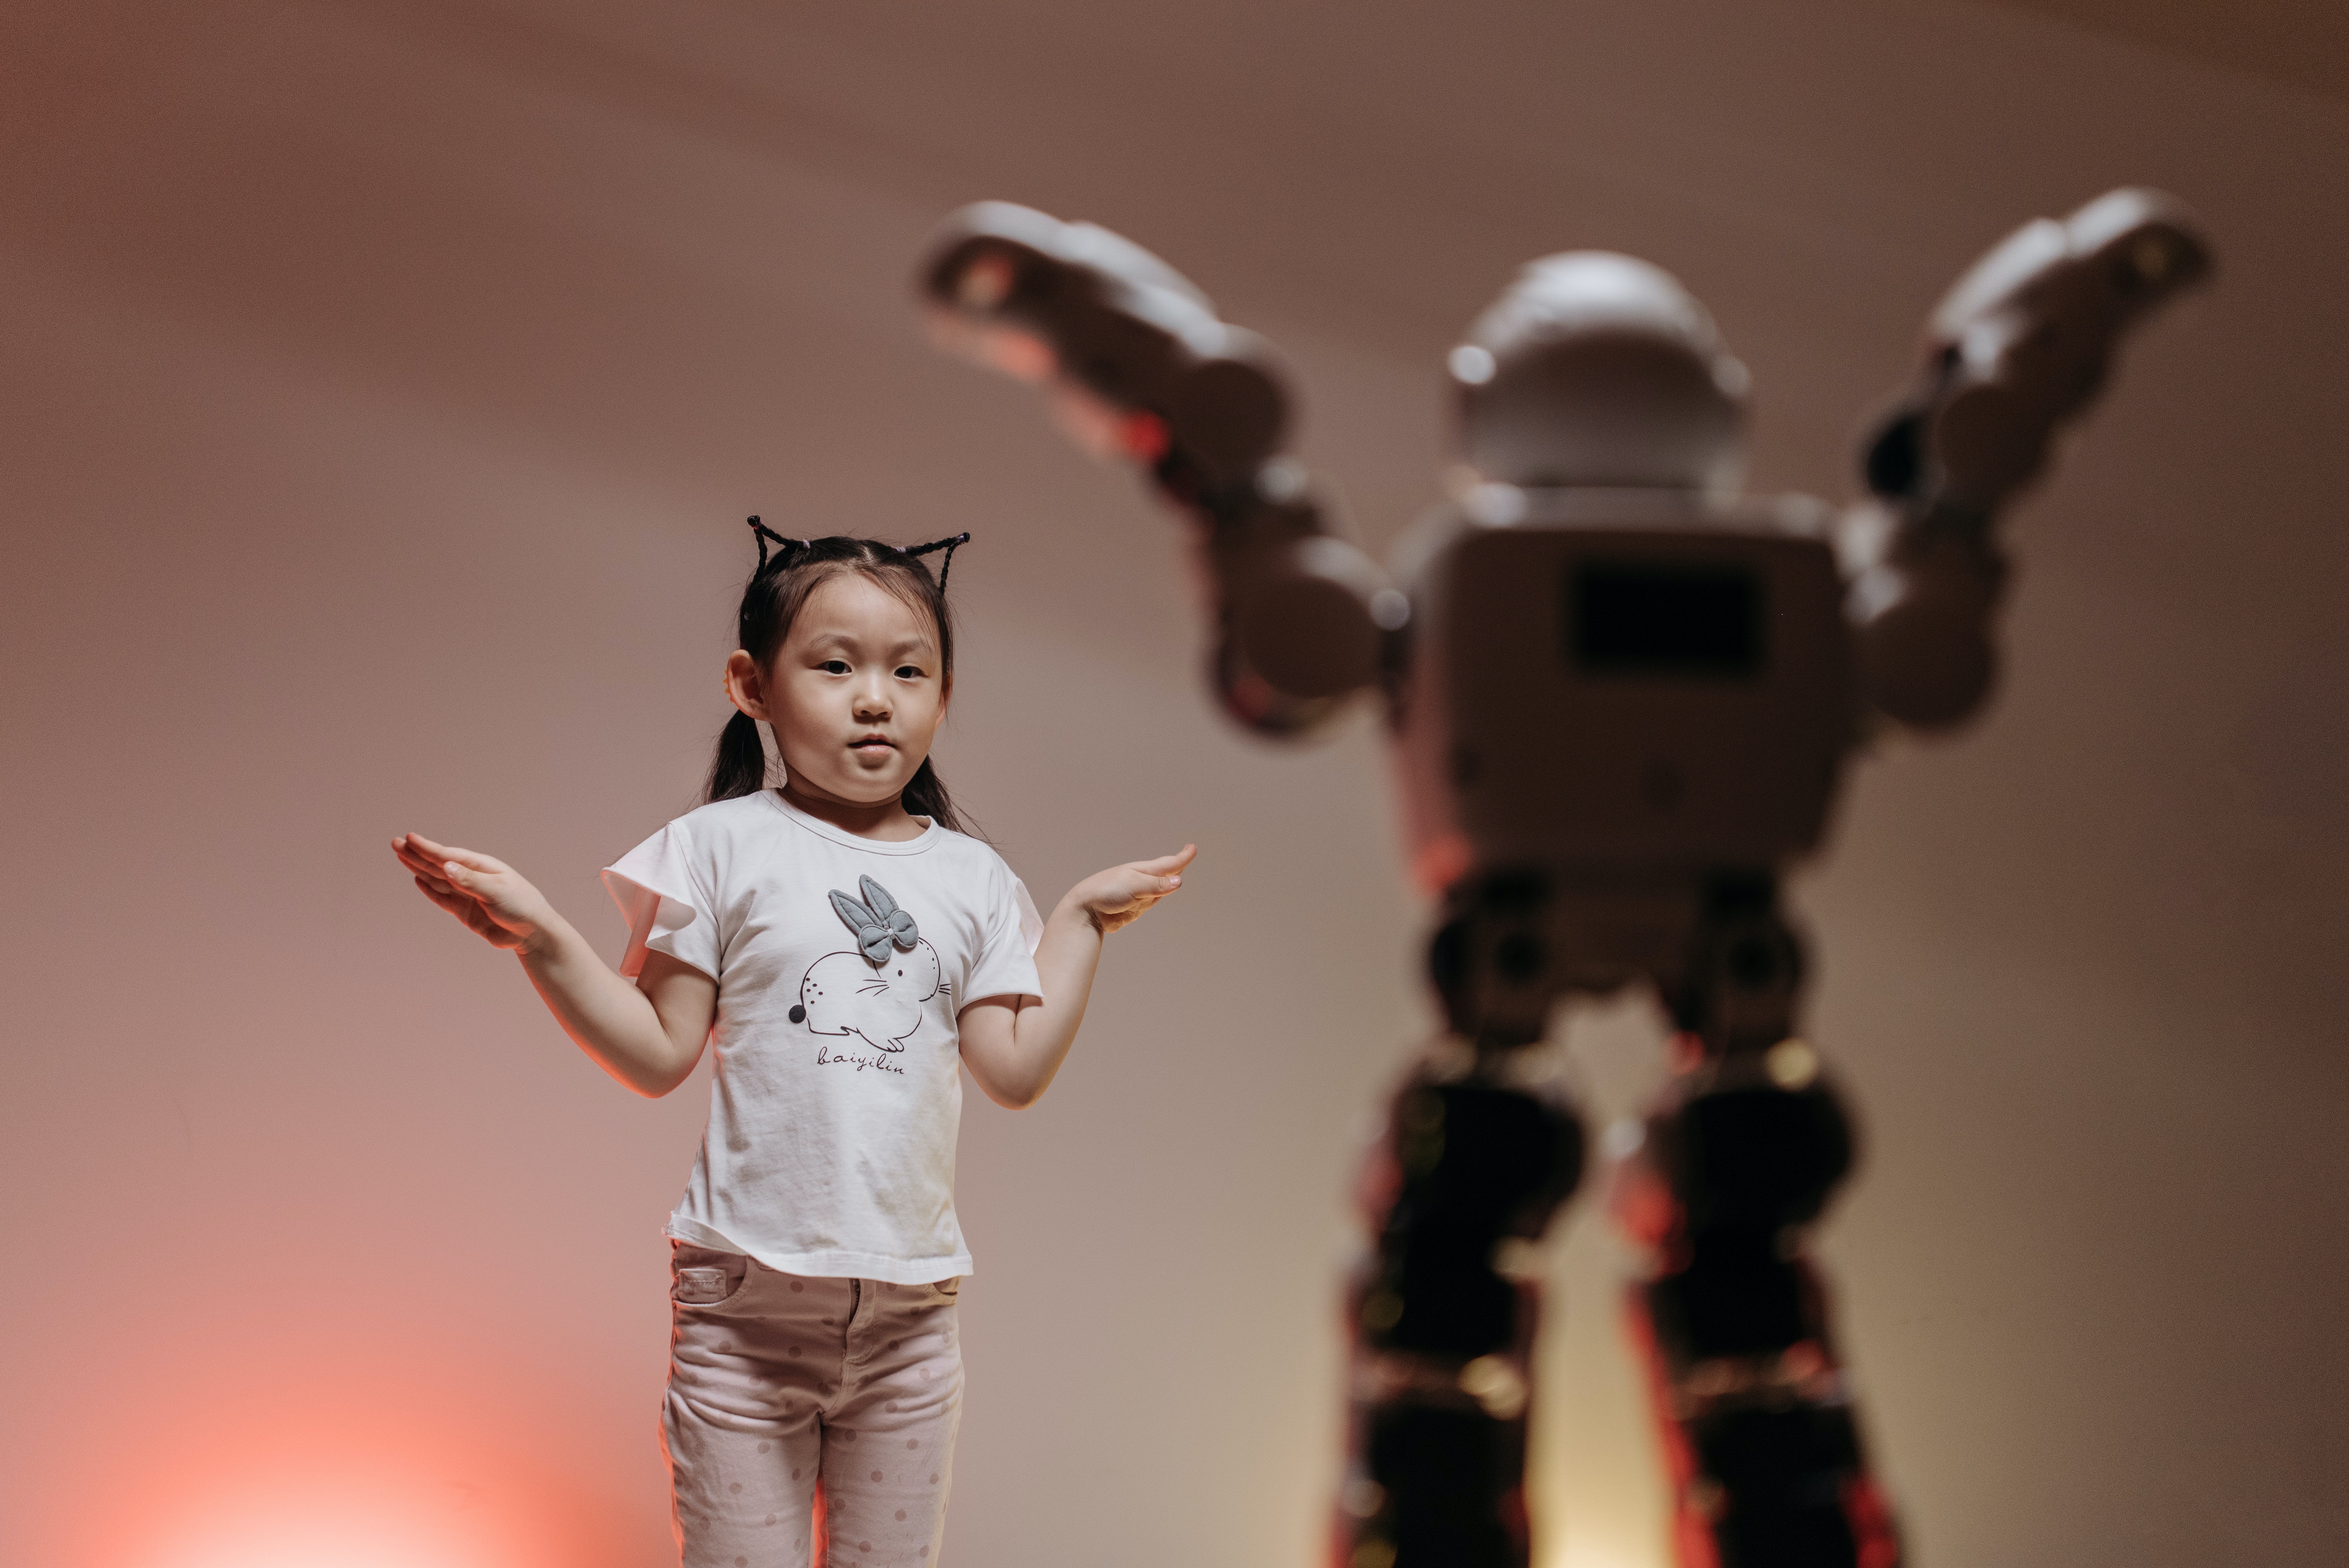 La imagen muestra una niña imitando a un robot